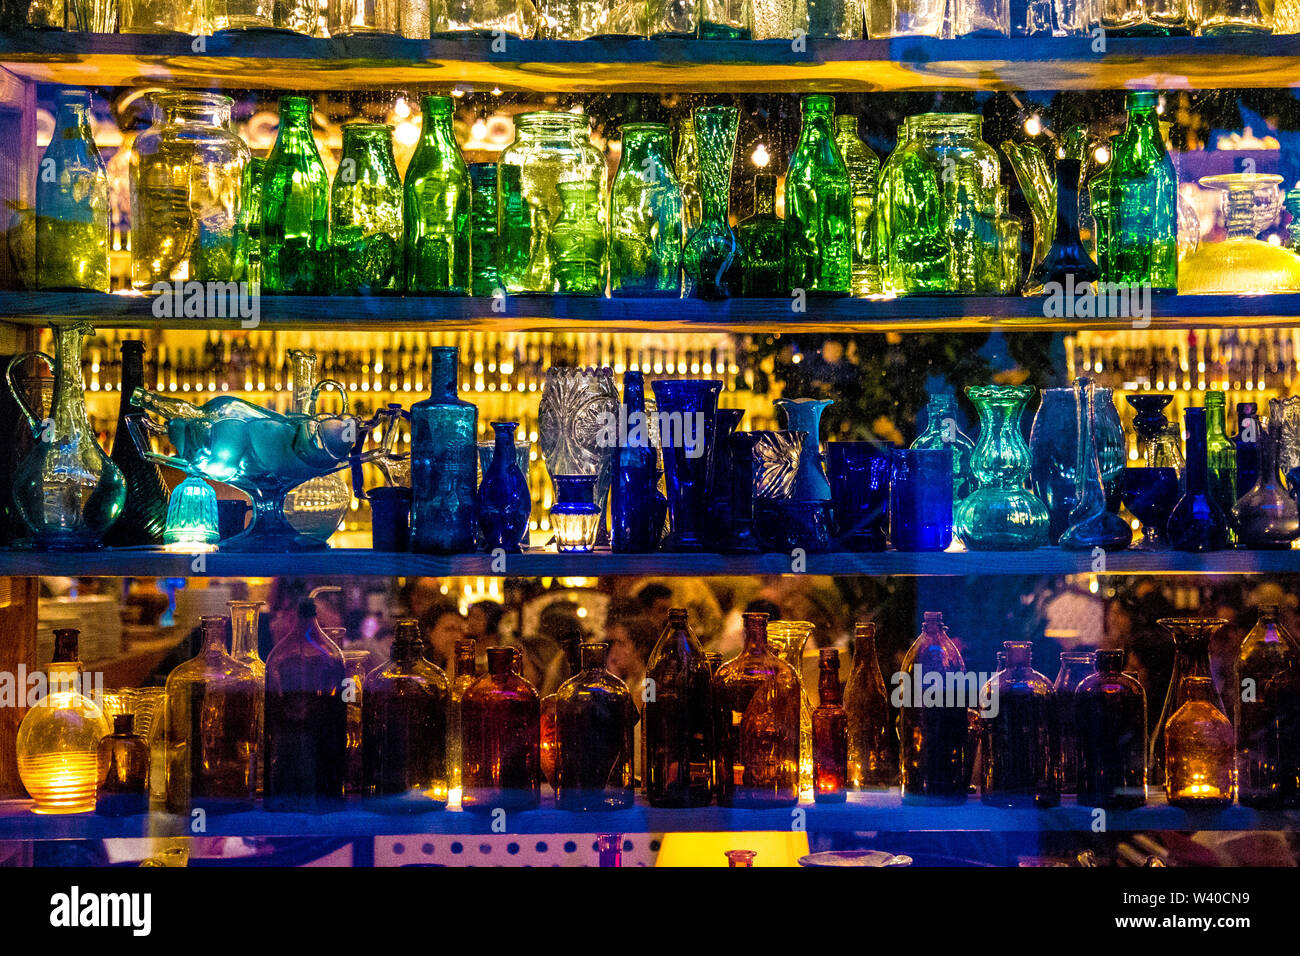 Bunte Flaschen und Gläser, Außen / Innen der sizilianischen Restaurant Circolo Popolare Restaurant, London, UK Stockfoto